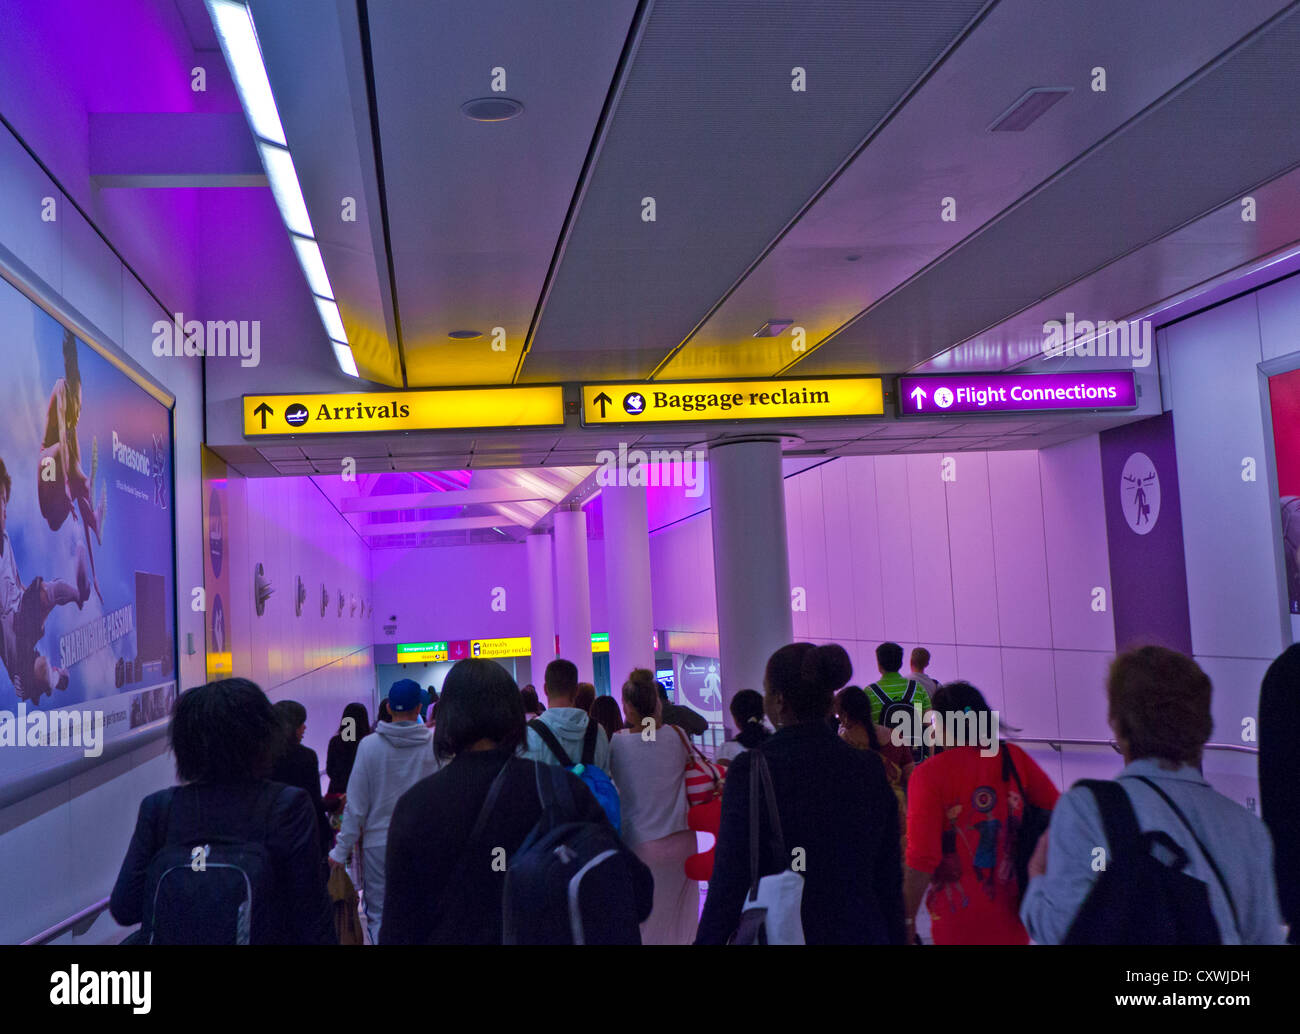 ANKÜNFTE Fluggäste, die am Heathrow Airport Walkway ankommen, sind beleuchtet Beruhigende, durchfluteten Farben für Ankunfts- und Gepäckausgabebereiche Stockfoto